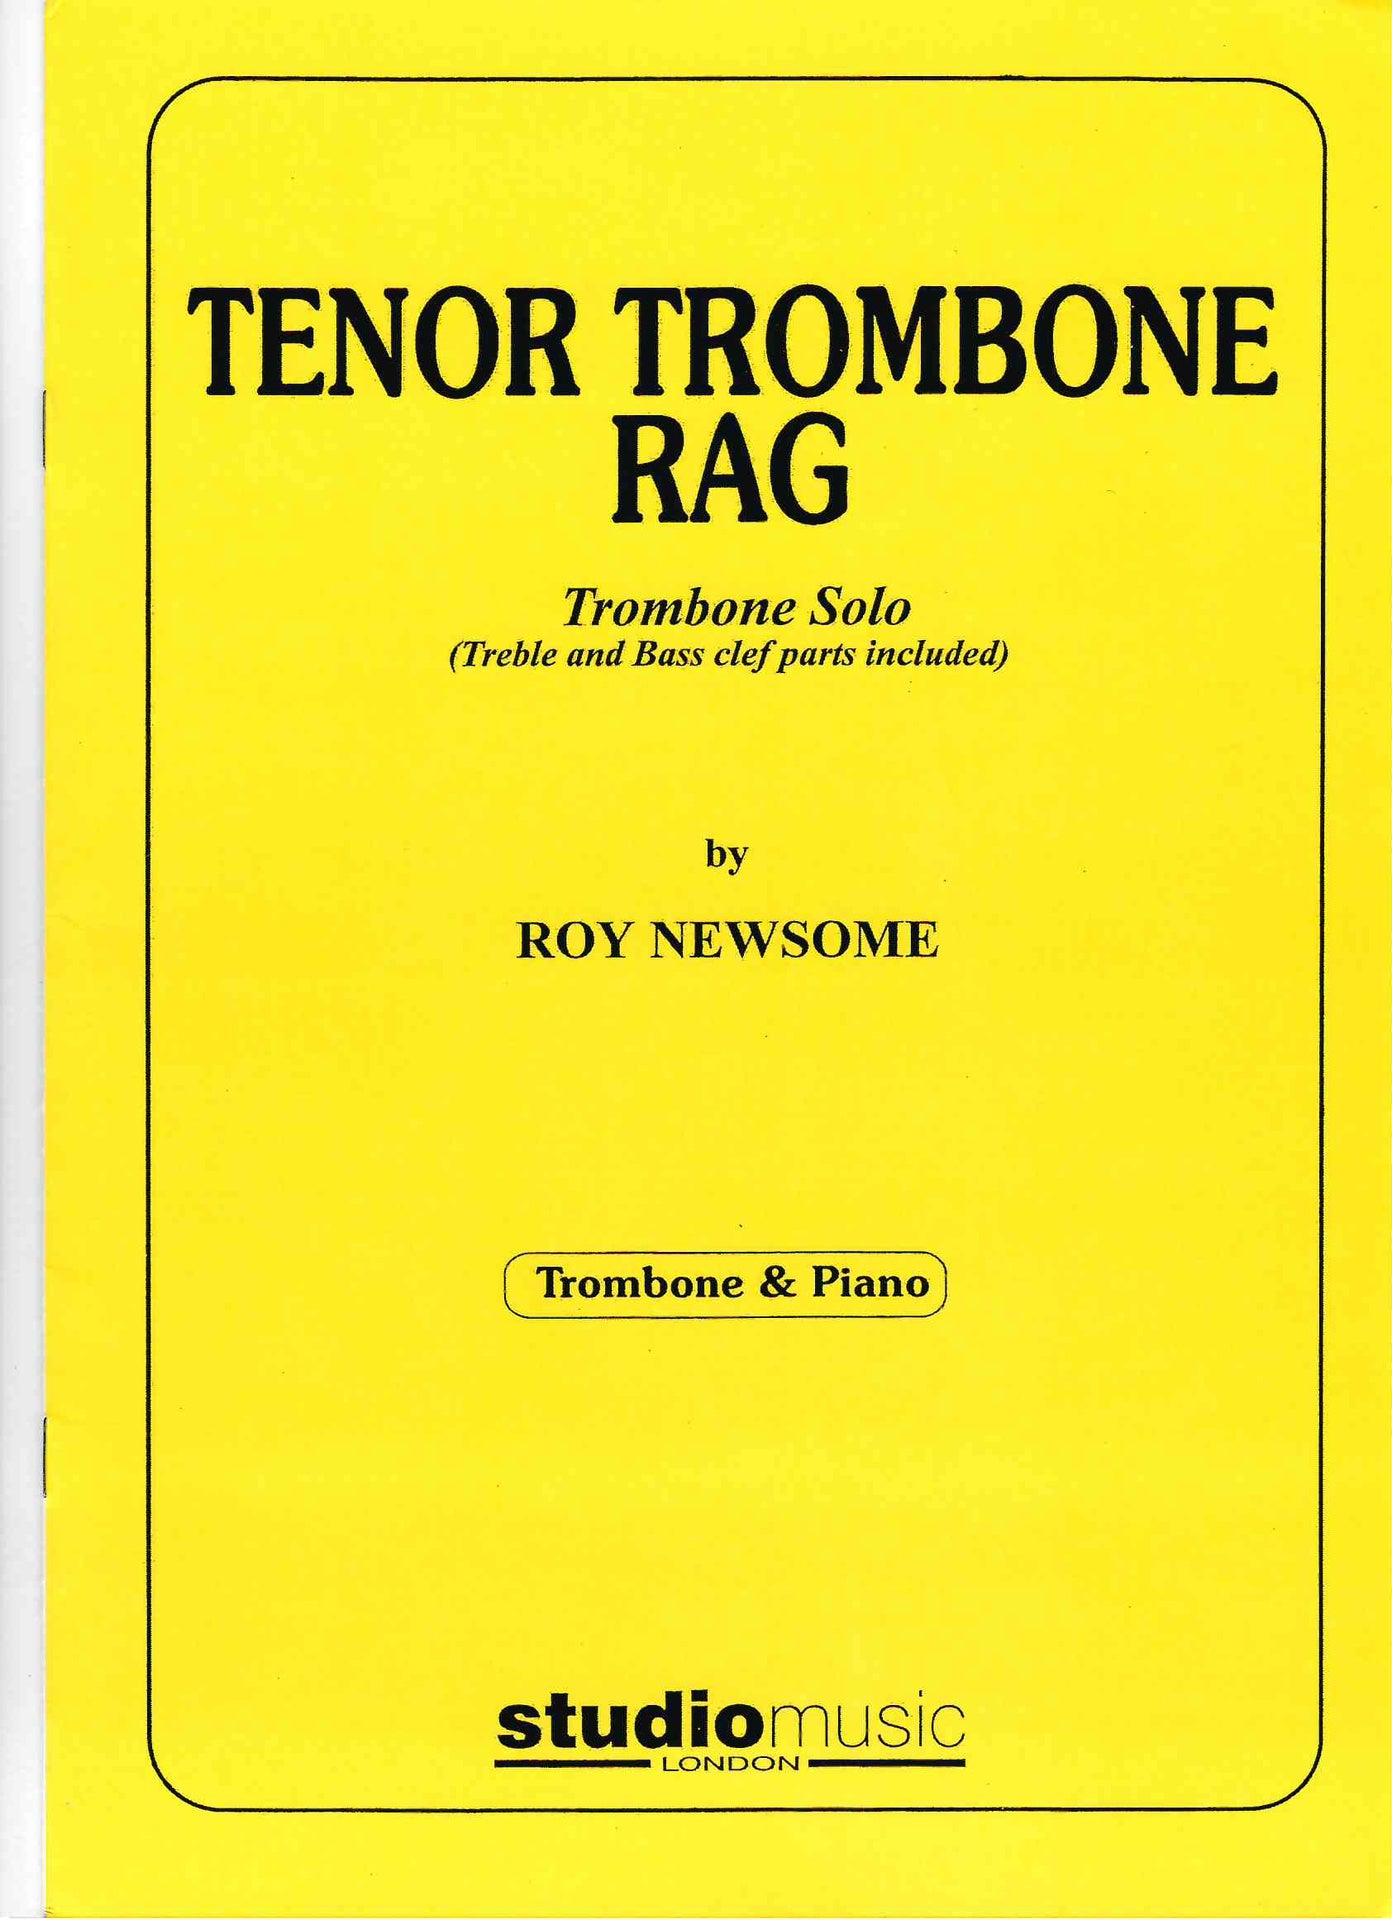 Newsome - Tenor Trombone Rag - Trombone/Piano Accompaniment Studio M-050-03459-9